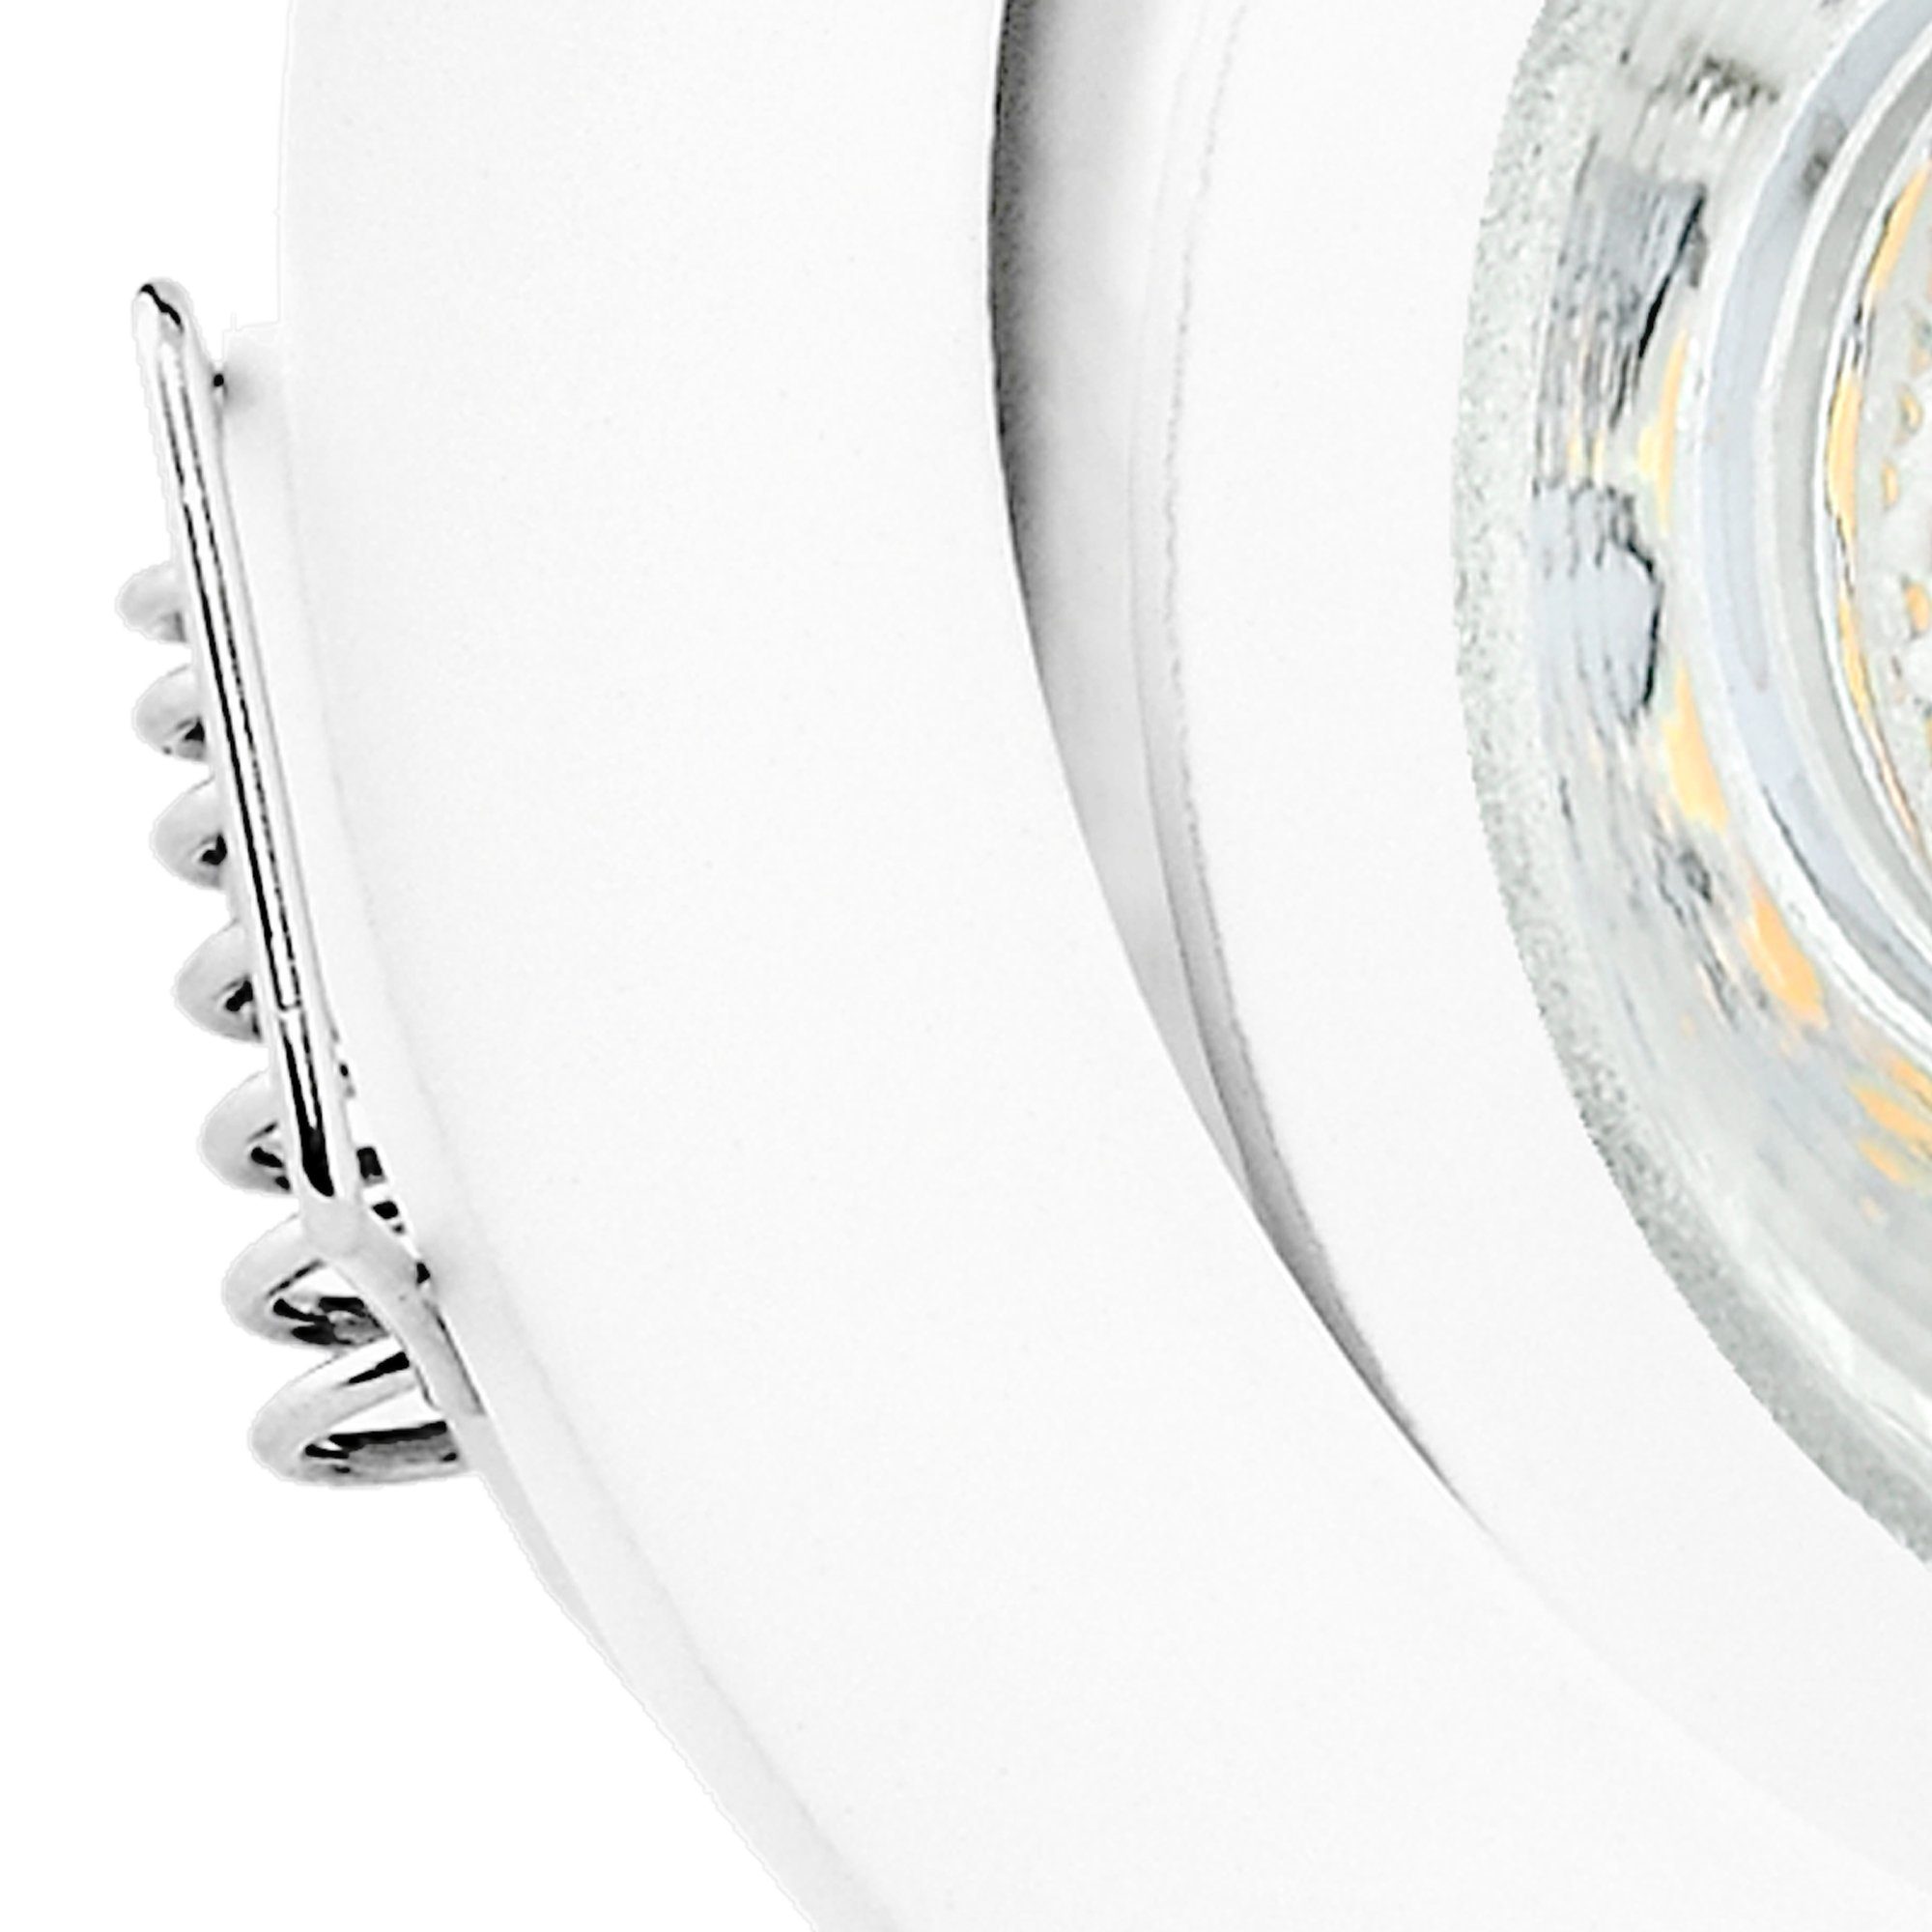 GU10 - LED Leuchtmittel LED linovum Leuchtmittel Weiss rund Einbaustrahler inklusive schwenkbar, 230V neutralweiss 3W Einbaustrahler inklusive,